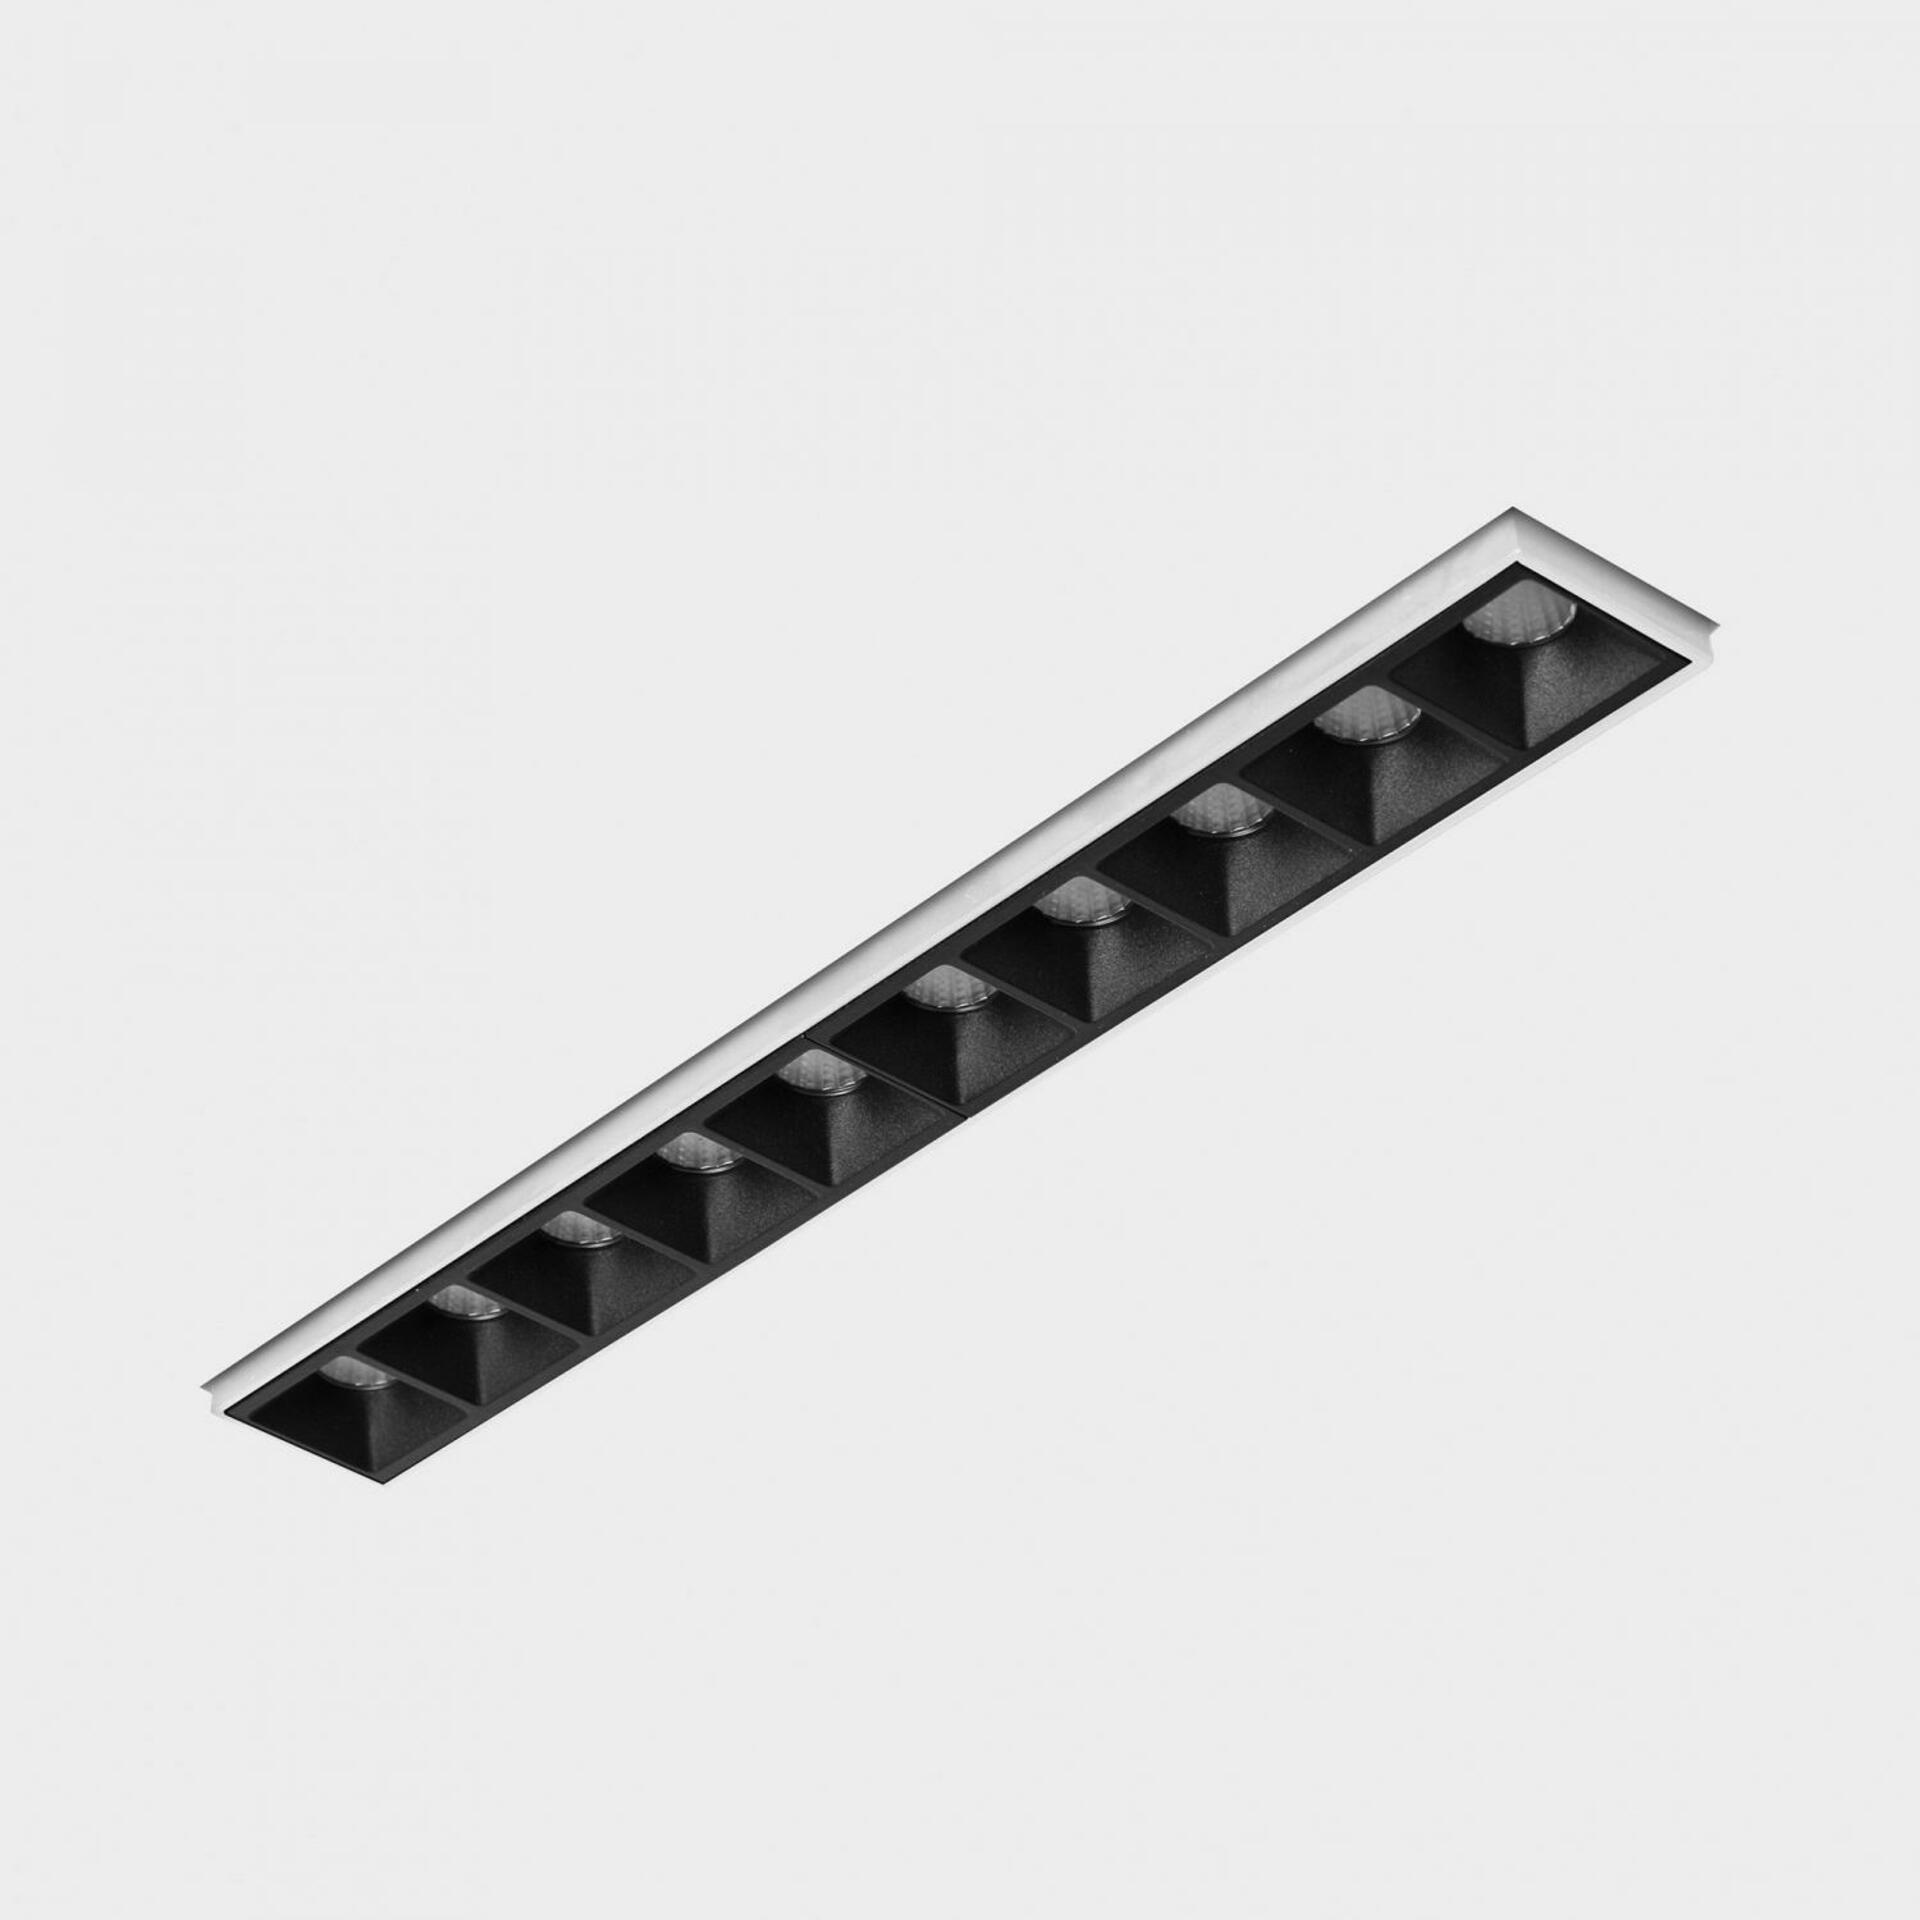 KOHL LIGHTING KOHL-Lighting NSES bezrámečkové zapuštěné svítidlo 270x35 mm bílá-černá 20 W CRI 90 2700K PHASE CUT